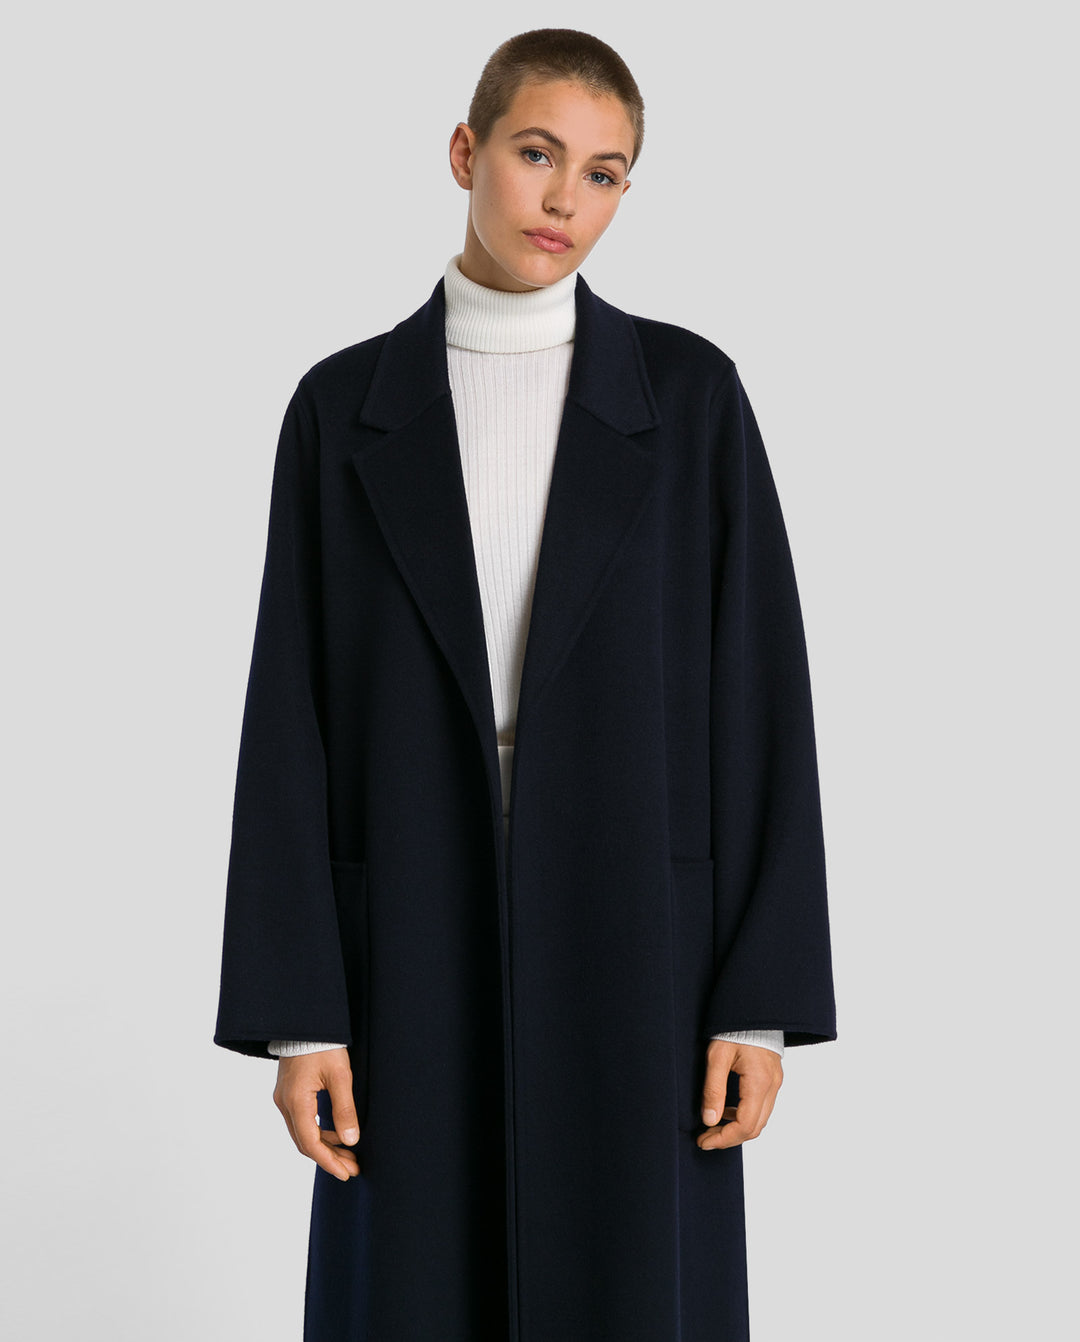 Celia coat in navy blue